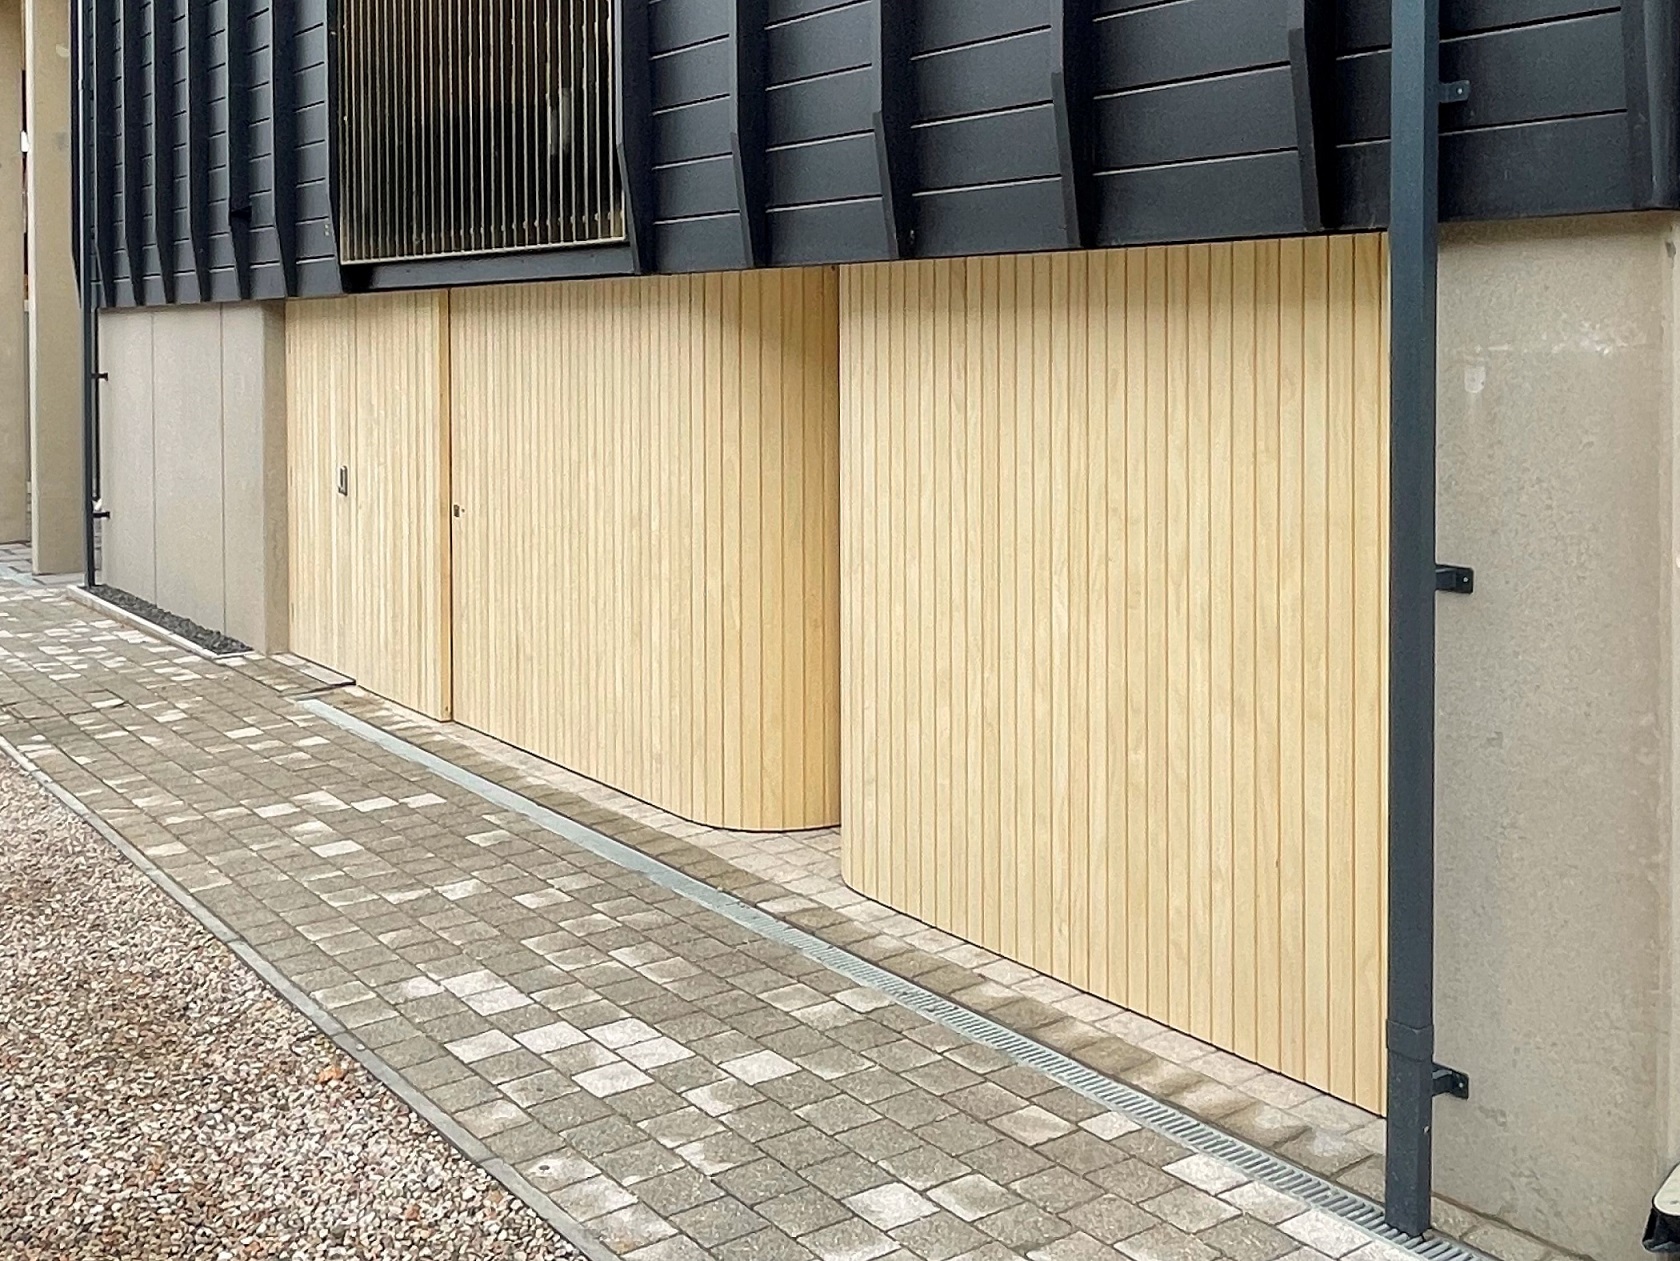 Rundum Original garage doors provide unique feature in prestigious Cornish development